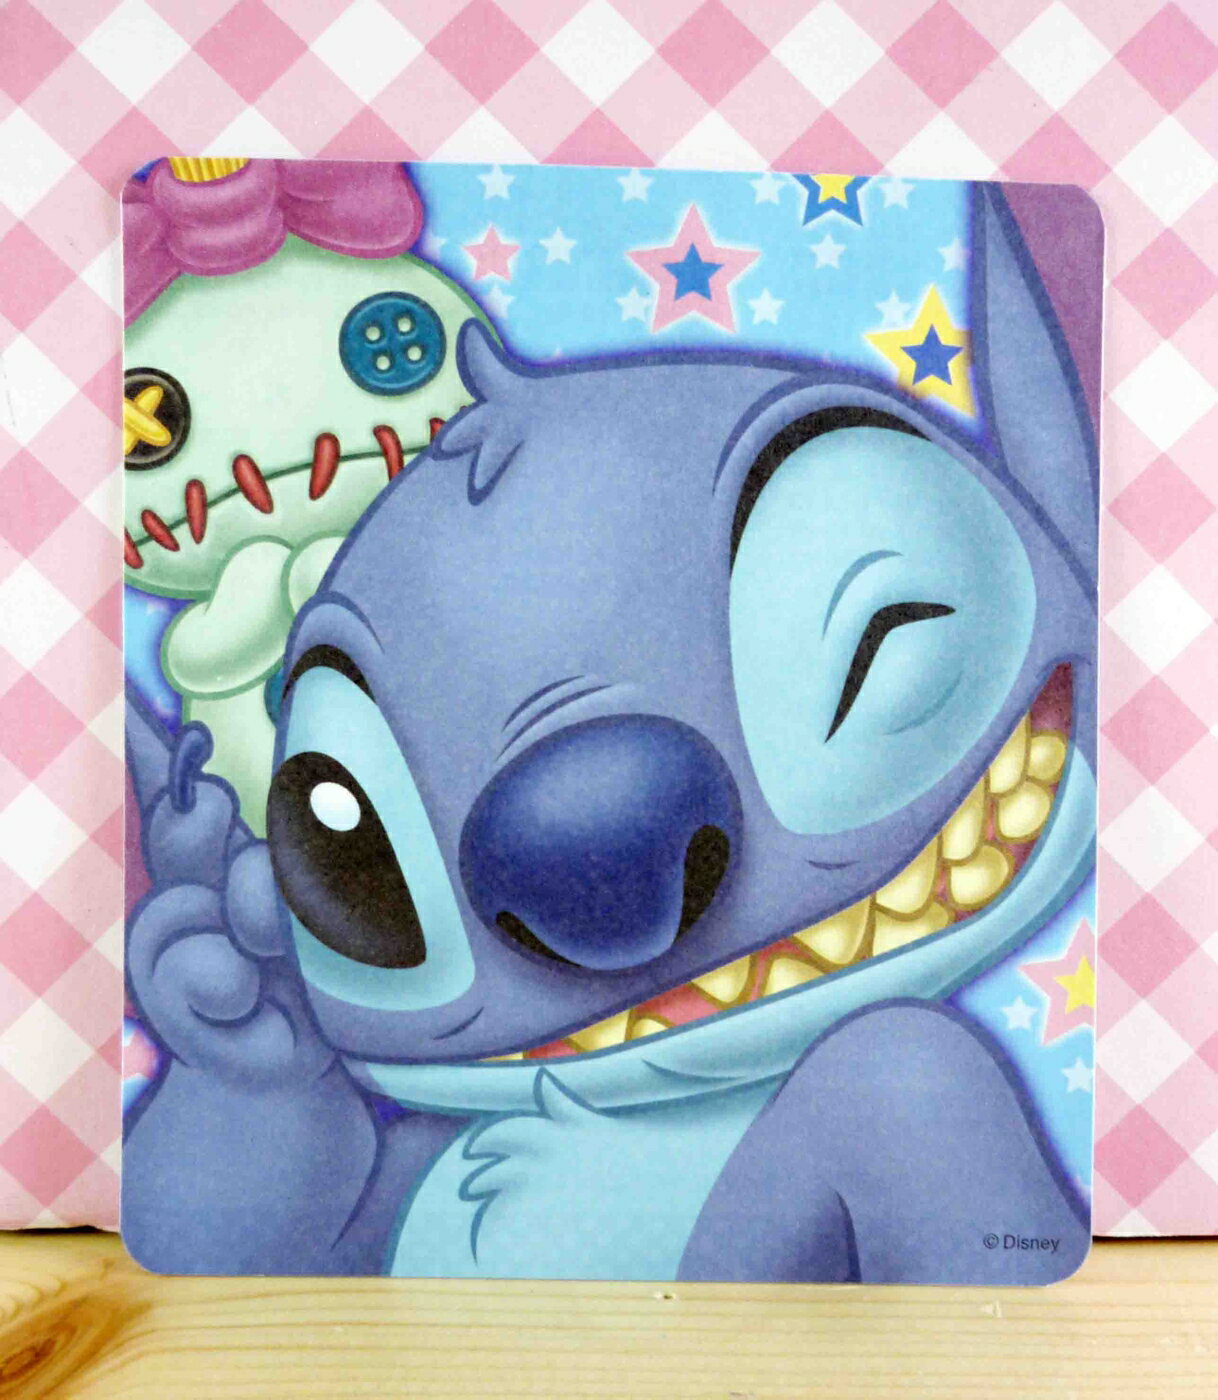 【震撼精品百貨】Stitch 星際寶貝史迪奇 卡片-竊笑 震撼日式精品百貨